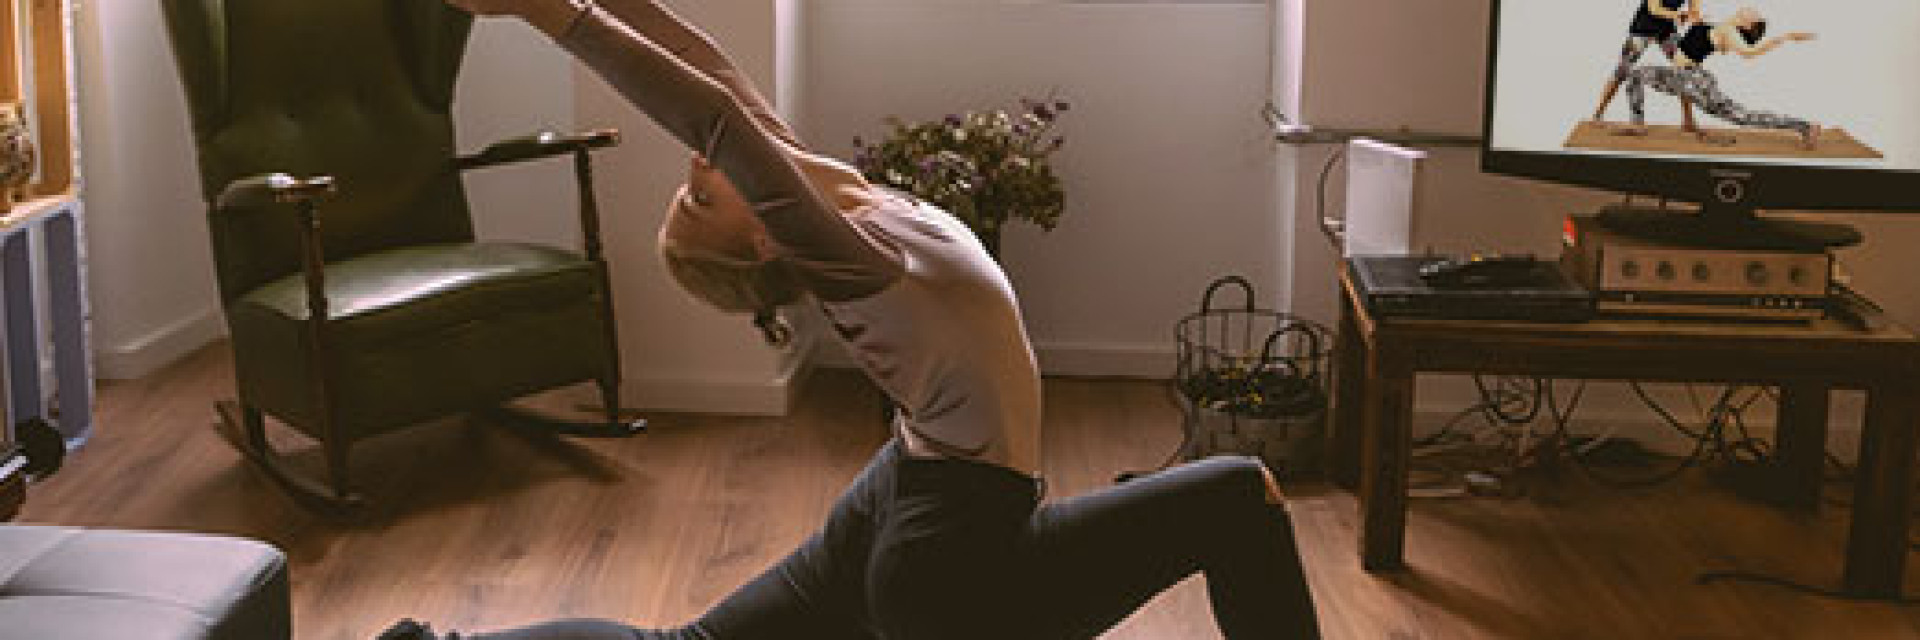 Yoga hareketlerinin faydaları nelerdir?